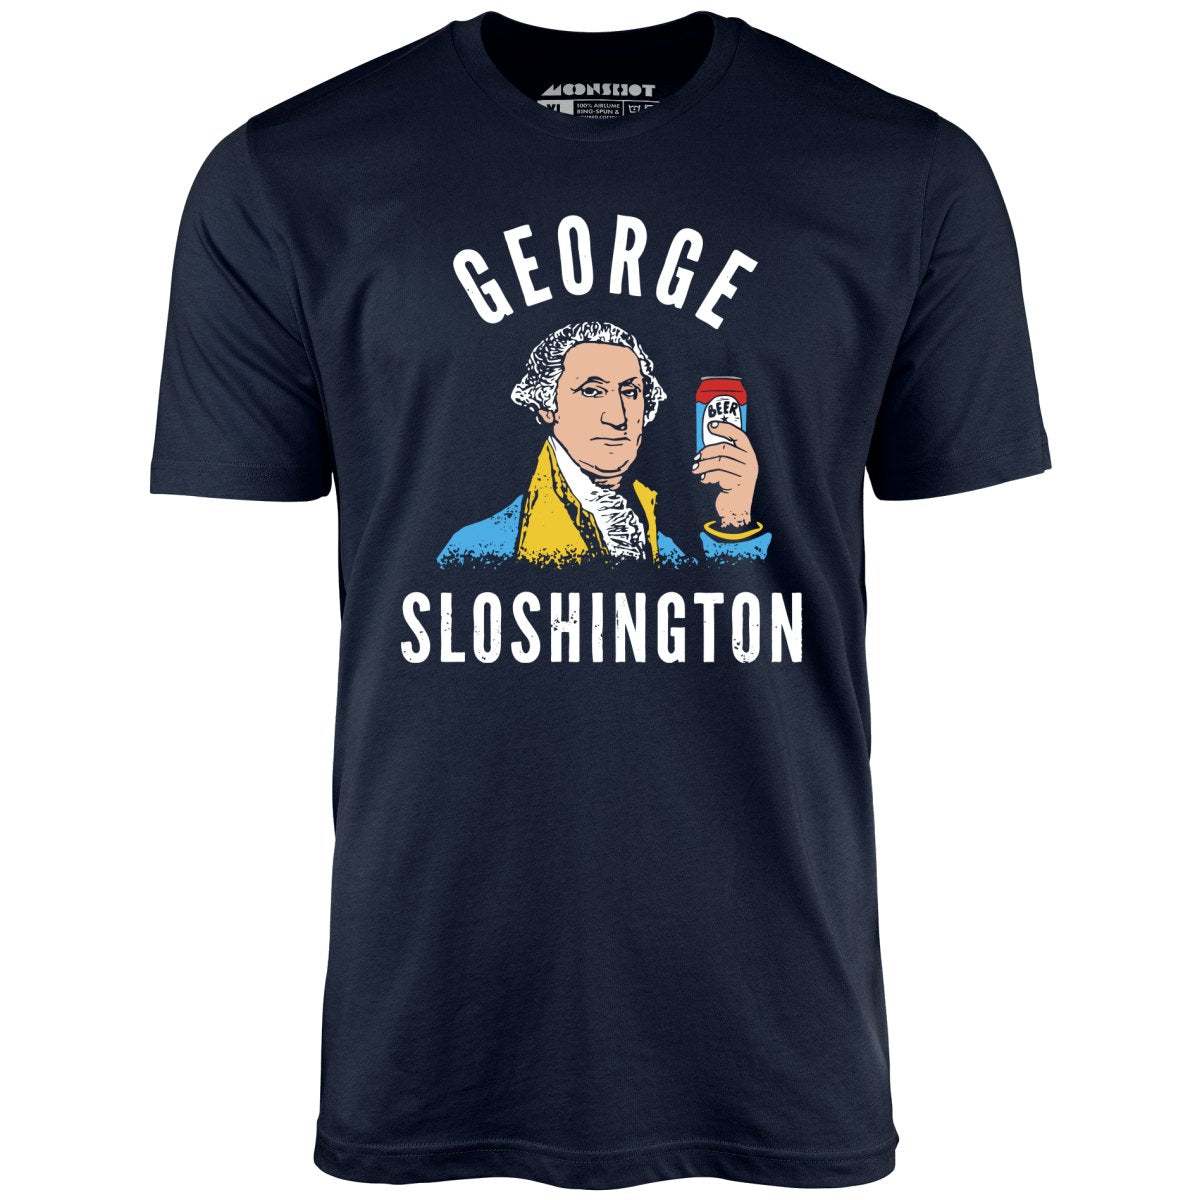 George Sloshington - Unisex T-Shirt